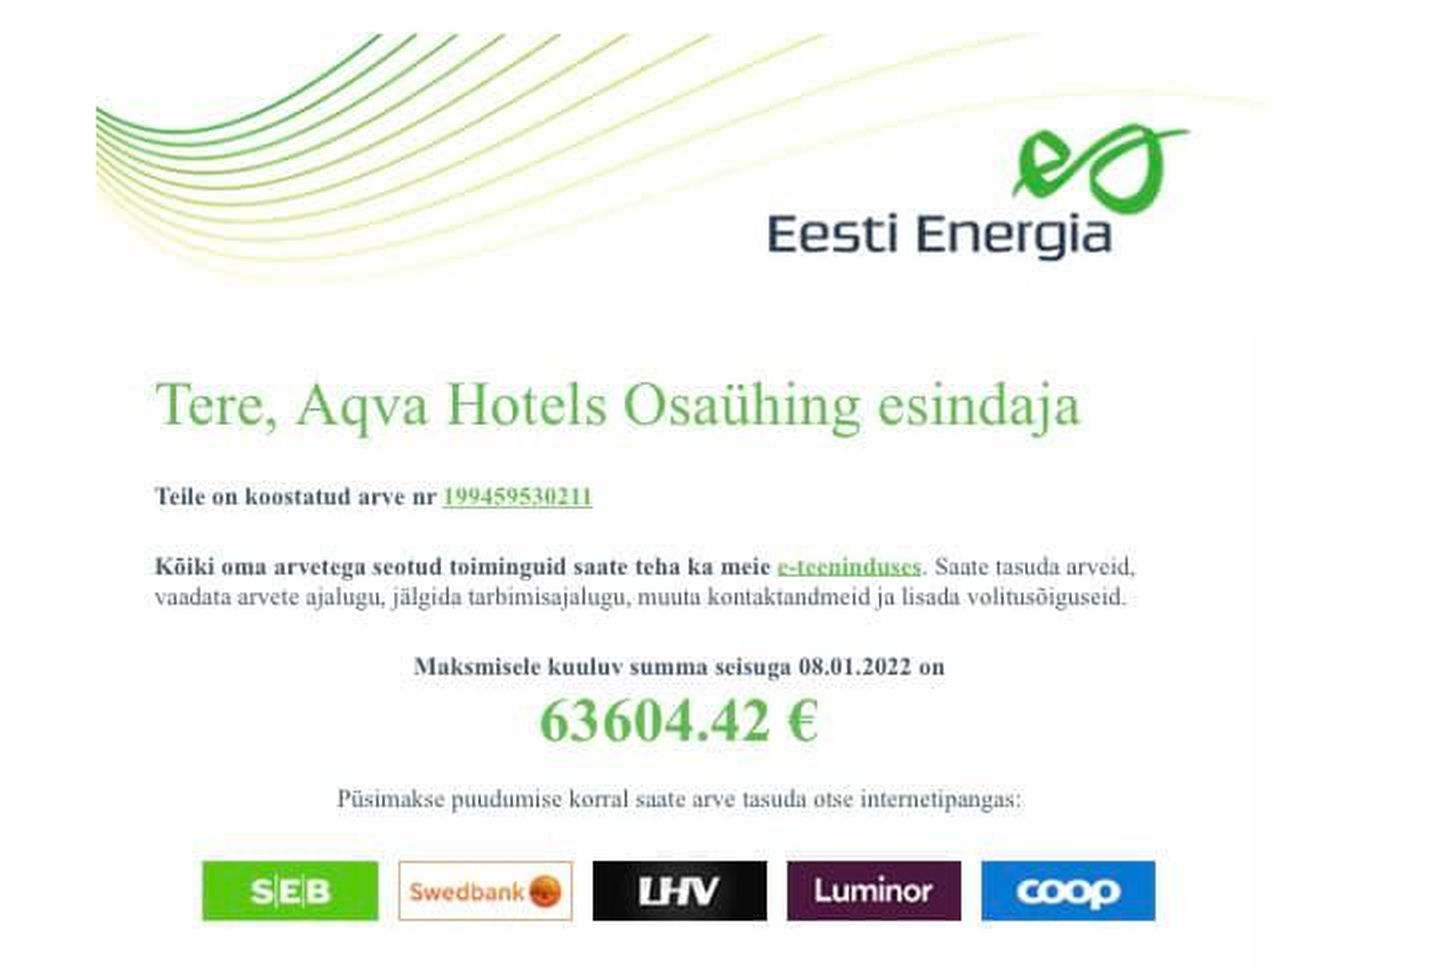 Счет за электричество Aqva Hotel в декабре вырос в четыре раза до 63 600 евро.